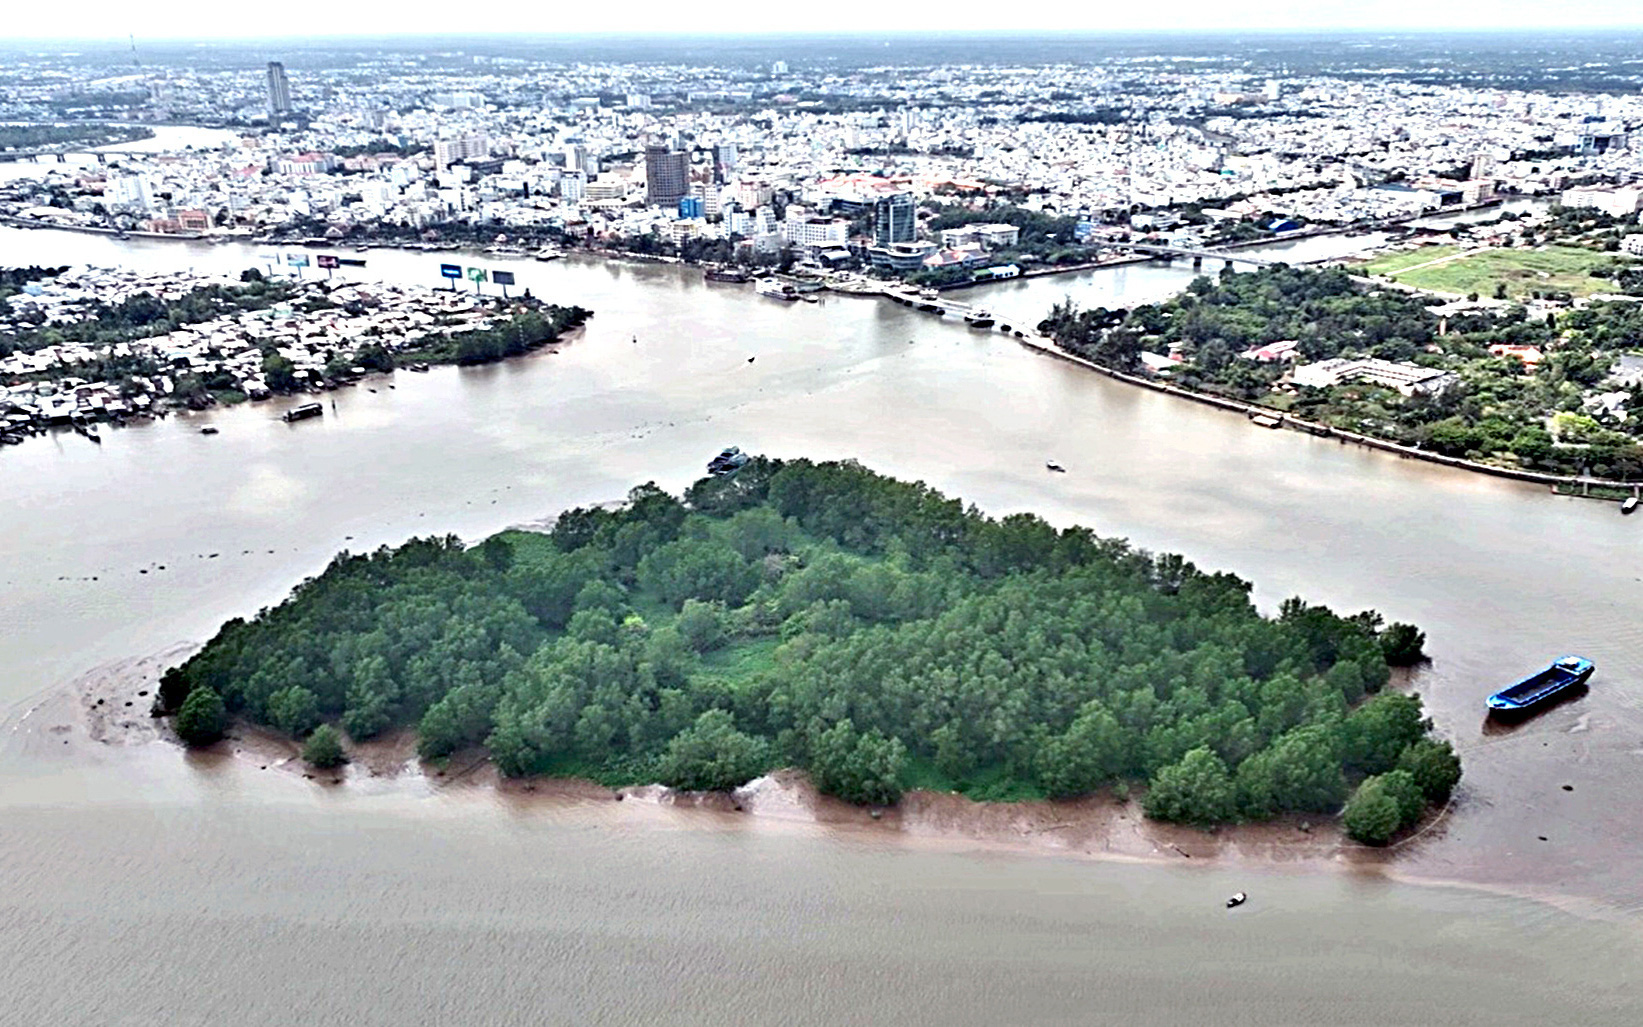 Cồn bãi sông Mekong - Kỳ 3: Cồn "kim cương" bên bến Ninh Kiều